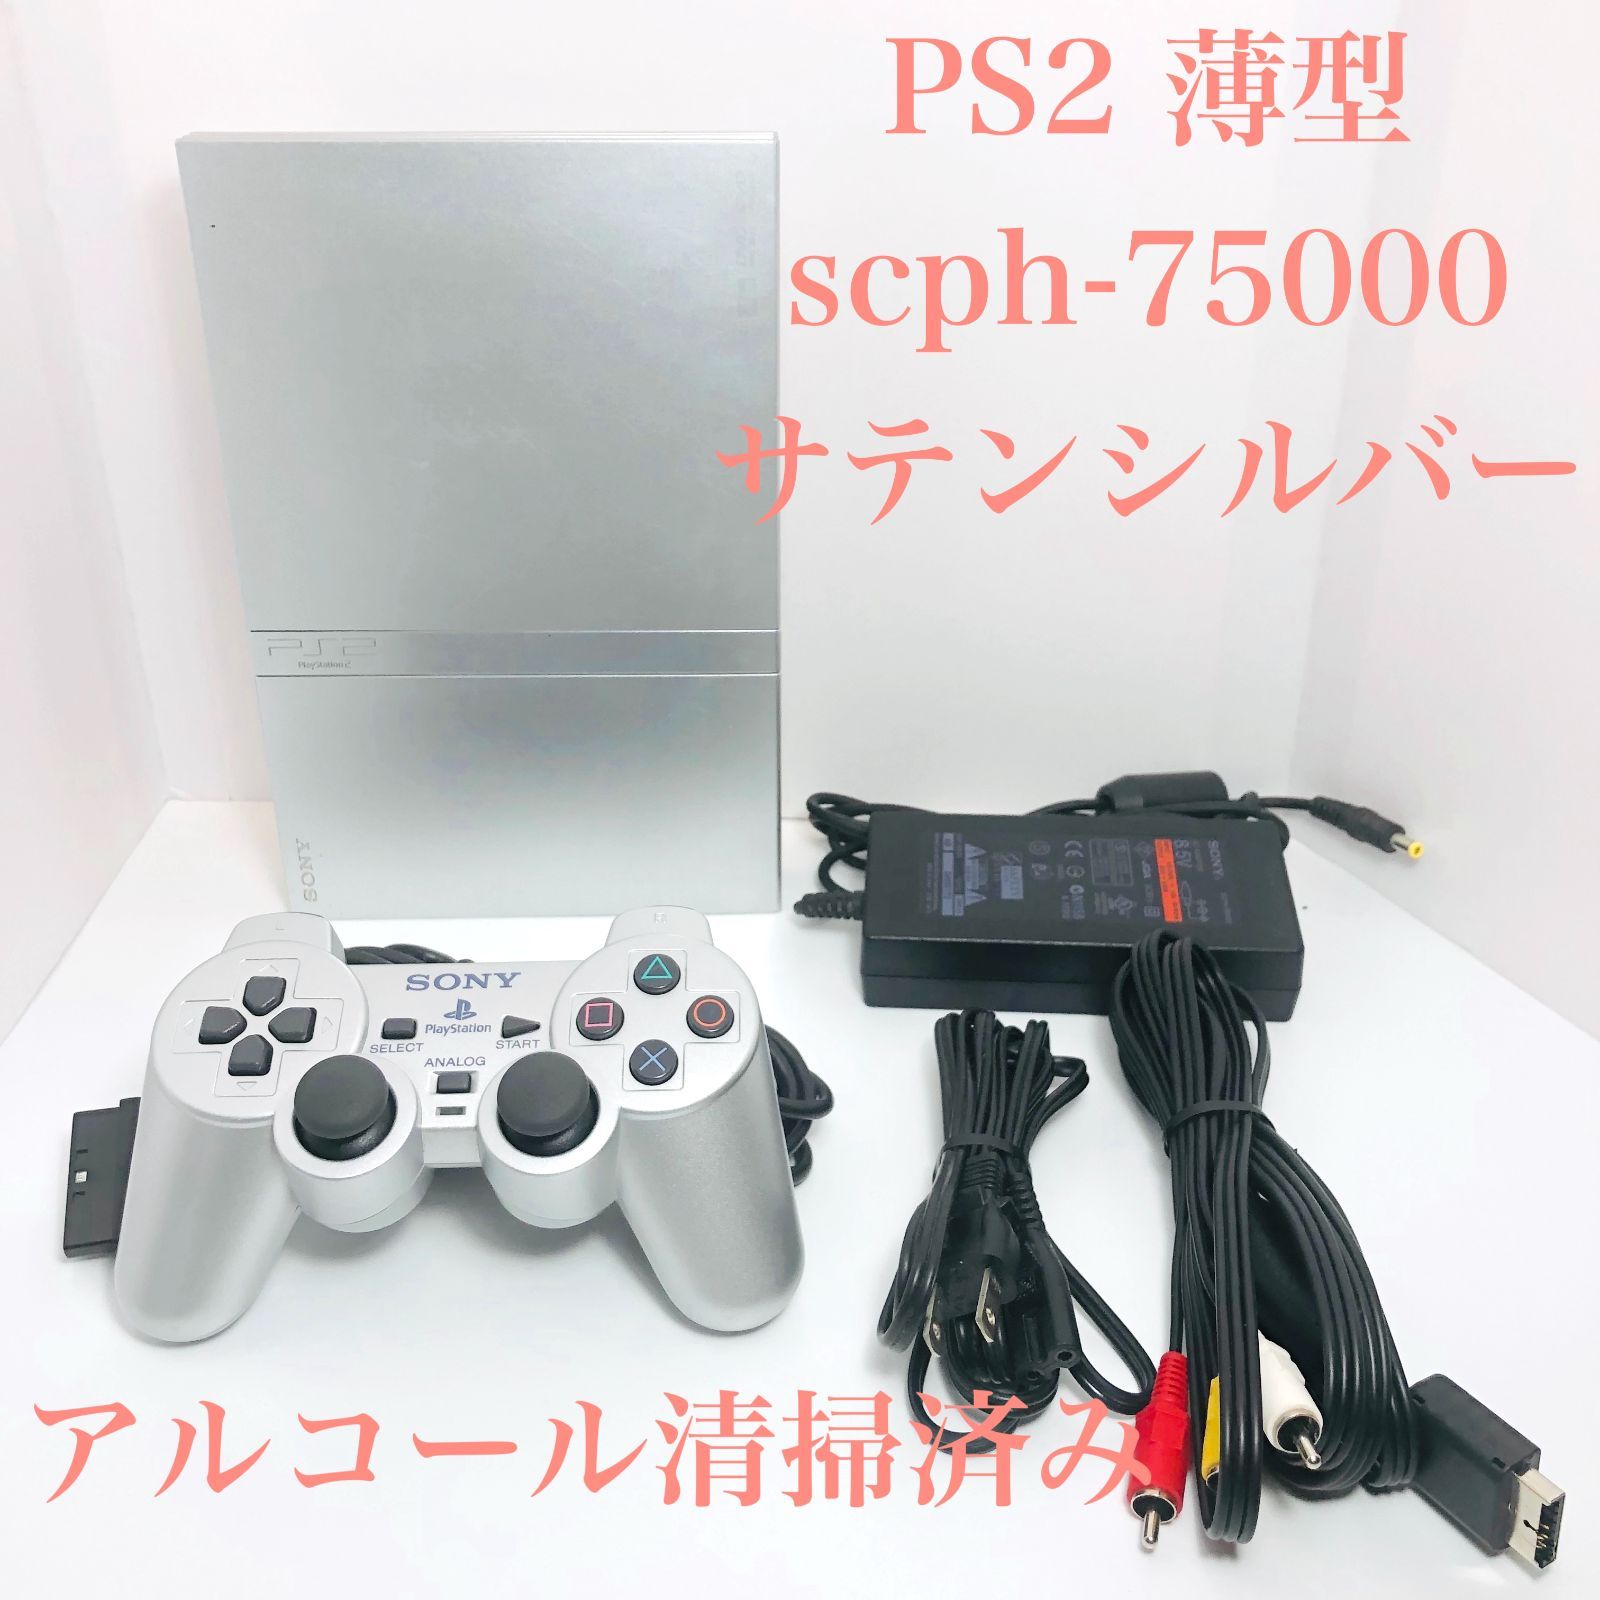 【動作確認済】PS2 本体セット シルバー SCPH-75000家庭用ゲーム機本体